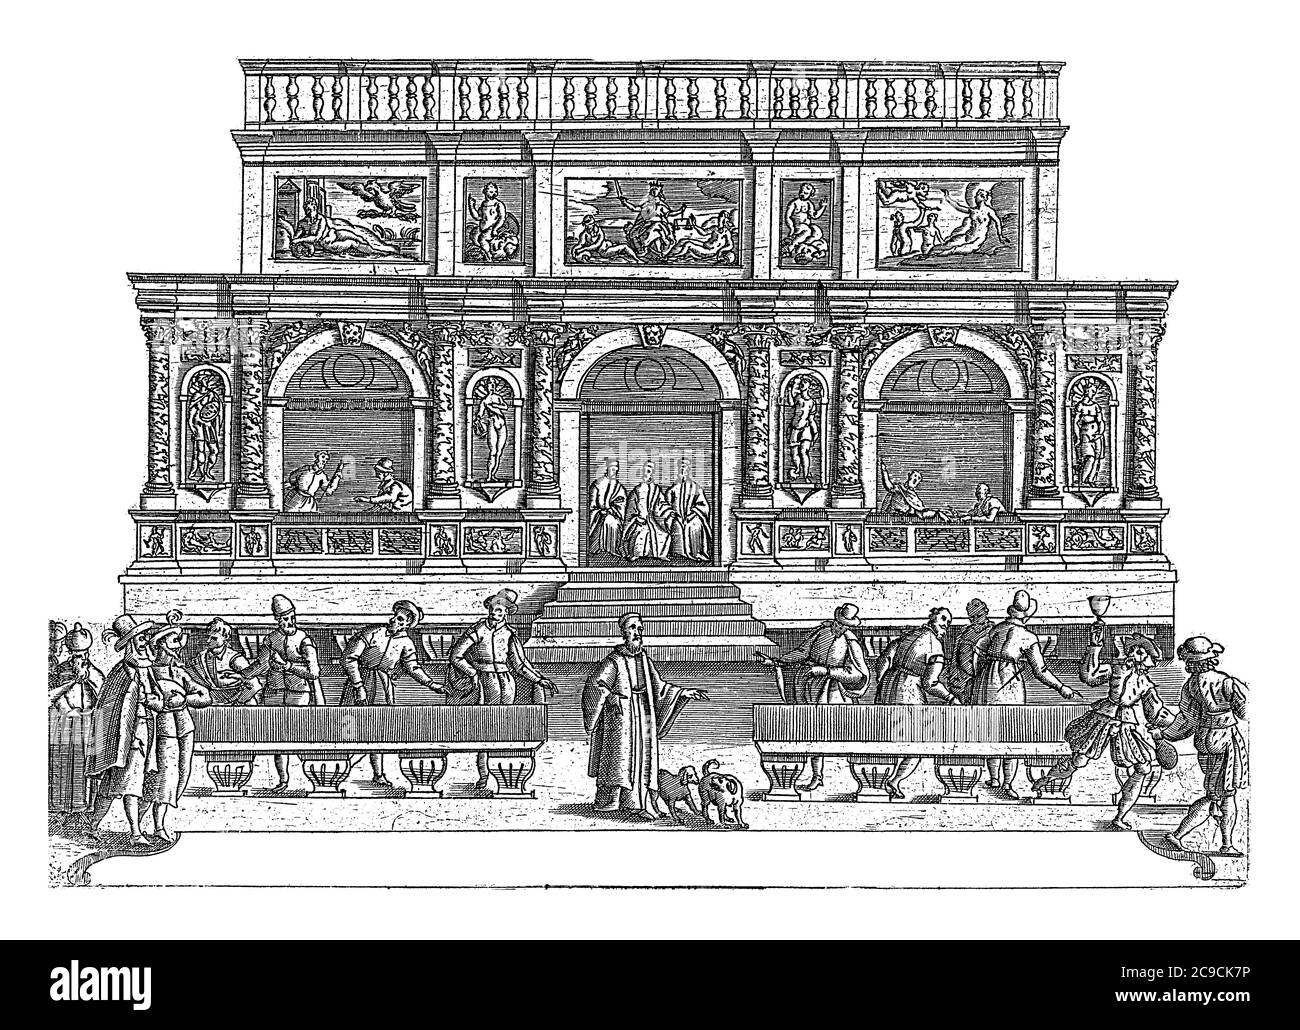 Loggetta del Sansovino auf dem Markusplatz in Venedig, anonym, 1610 die Loggetta del Sansovino mit Figuren aus der Commedia dell'arte in der Stirn Stockfoto